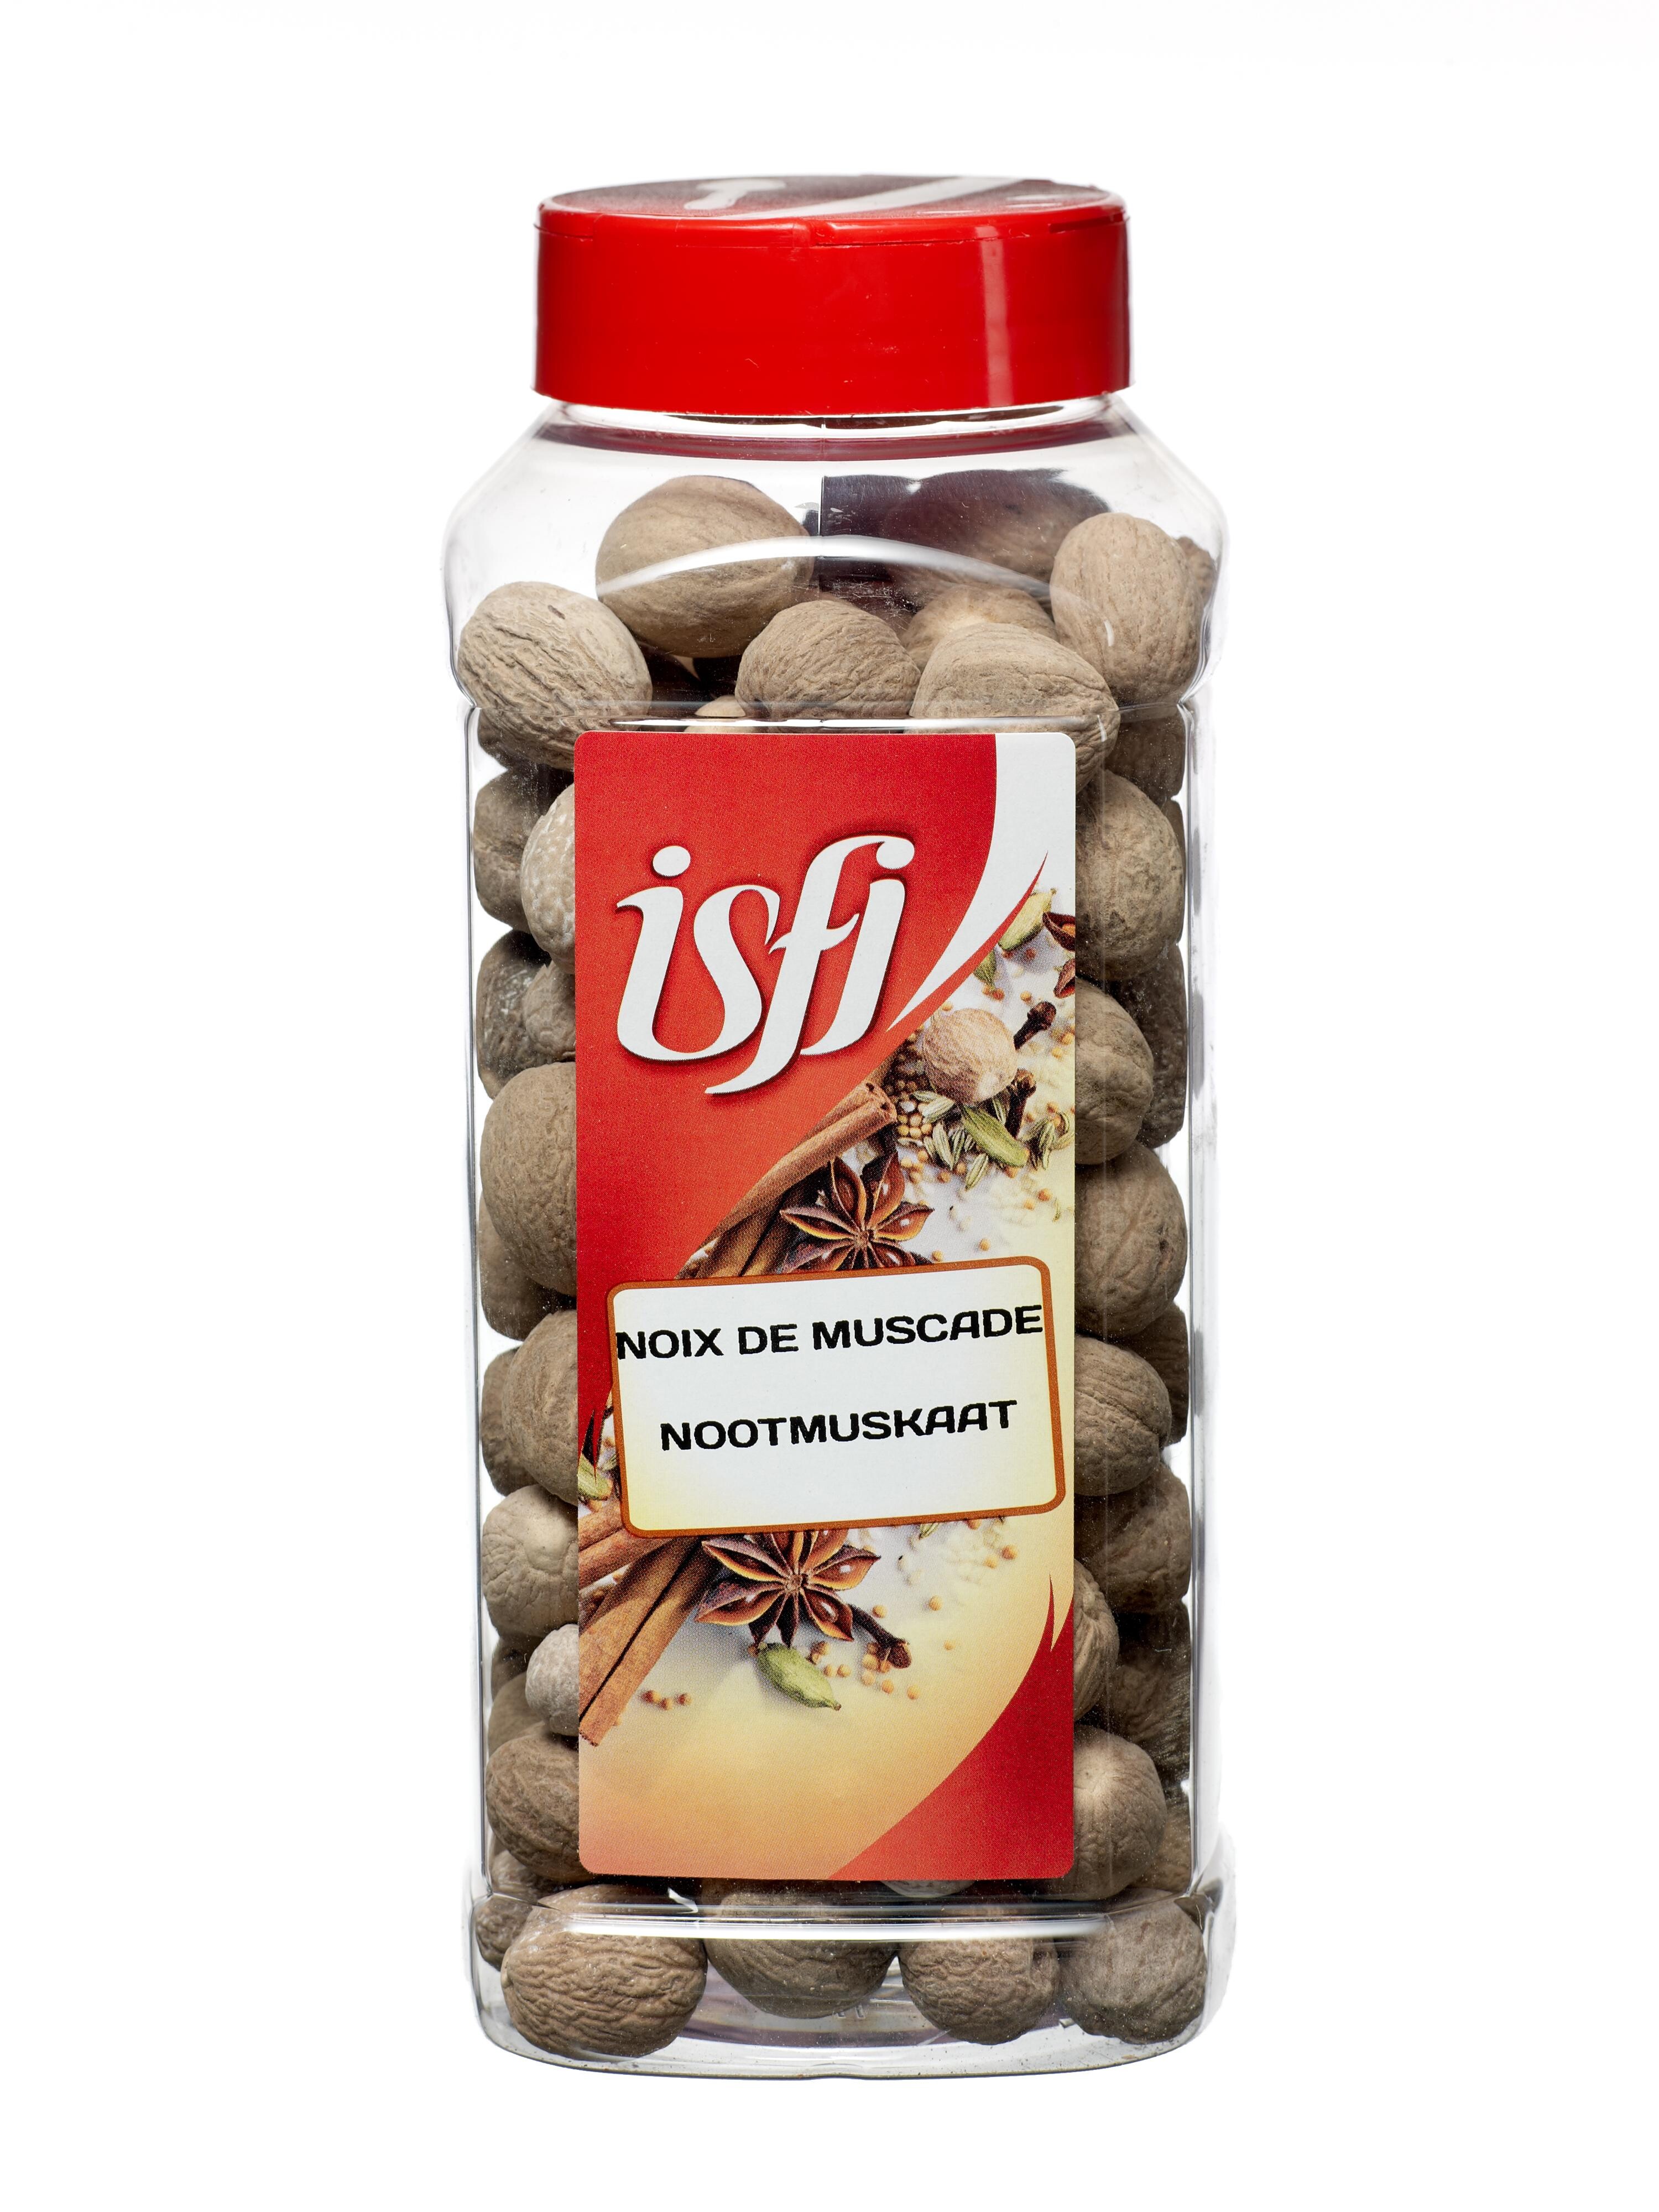 Nutmeg Whole 550gr Pet Jar Isfi Spices